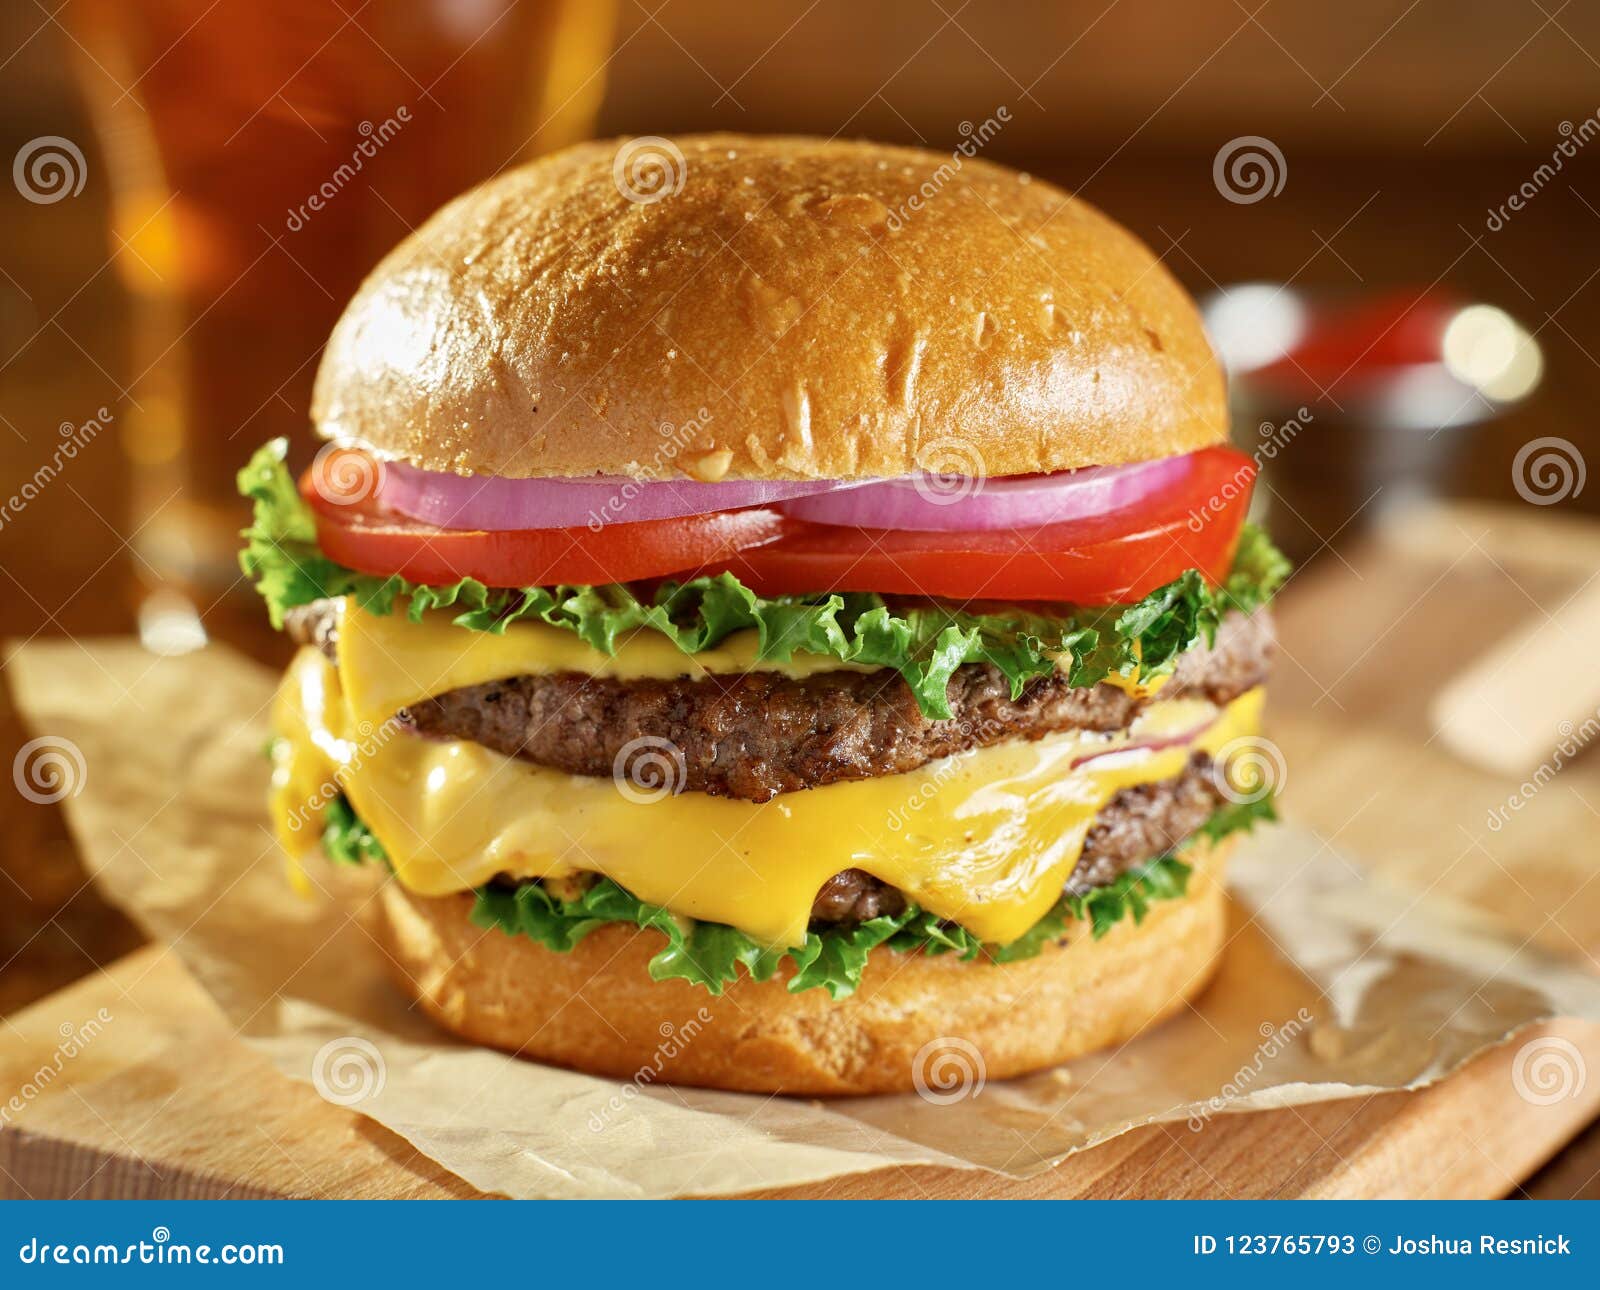 double cheeseburger on brioche bun